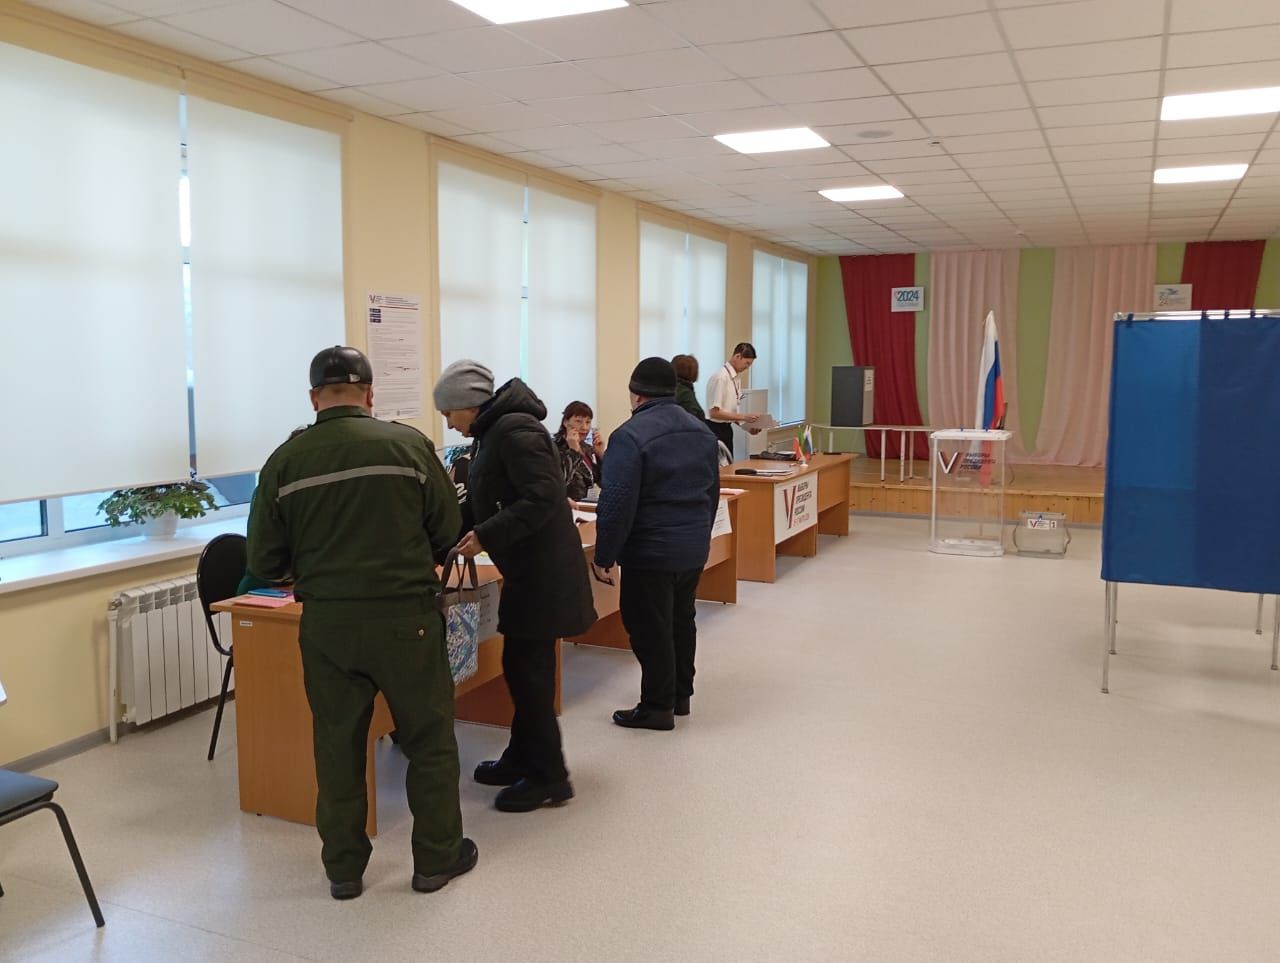 За 90% перевалило количество проголосовавших на участке №2379 в селе Чувашский Тимерлек к середине дня